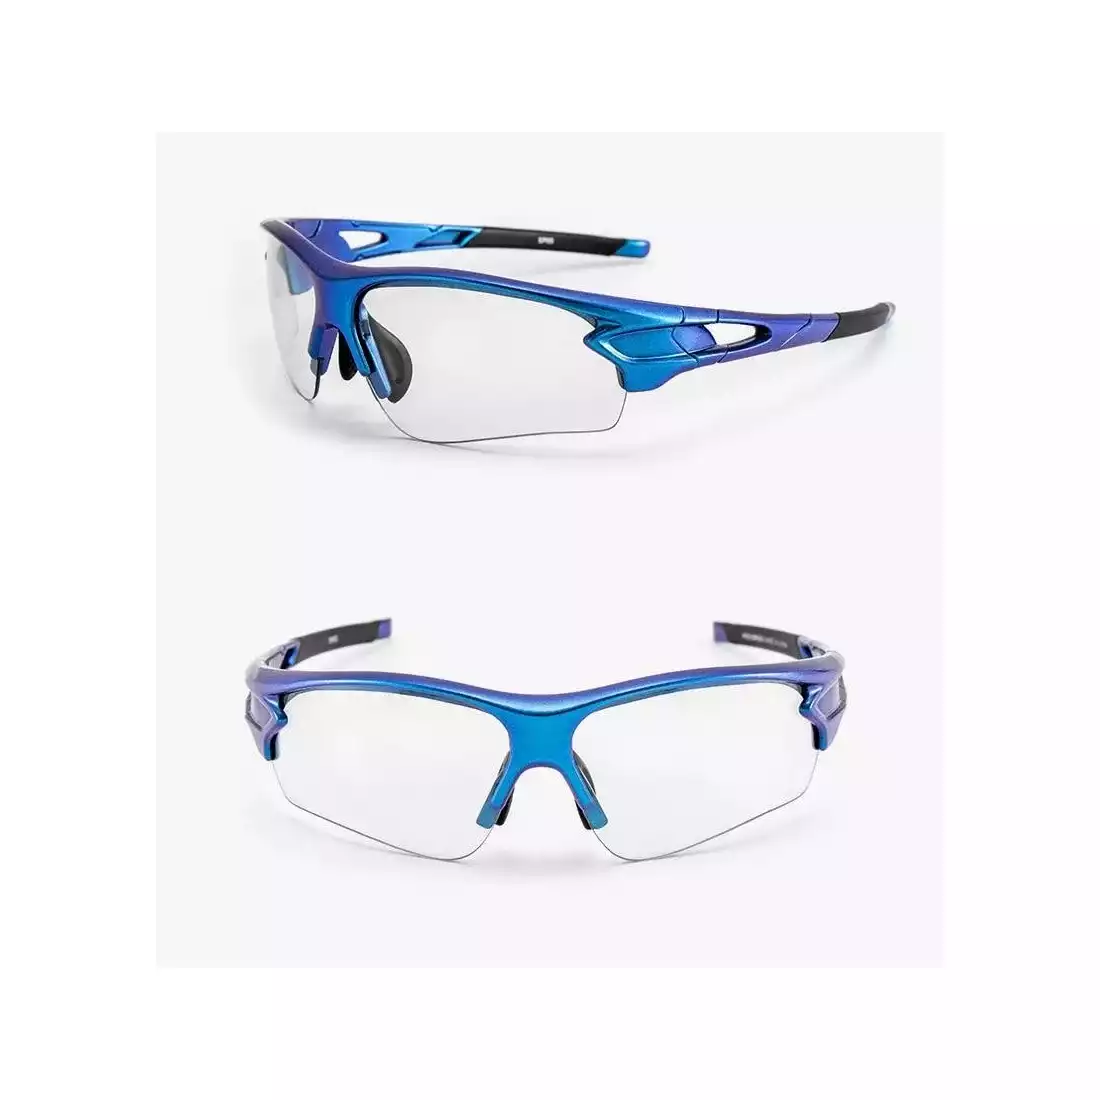 Rockbros okulary rowerowe / sportowe z fotochromem niebieskie 10069